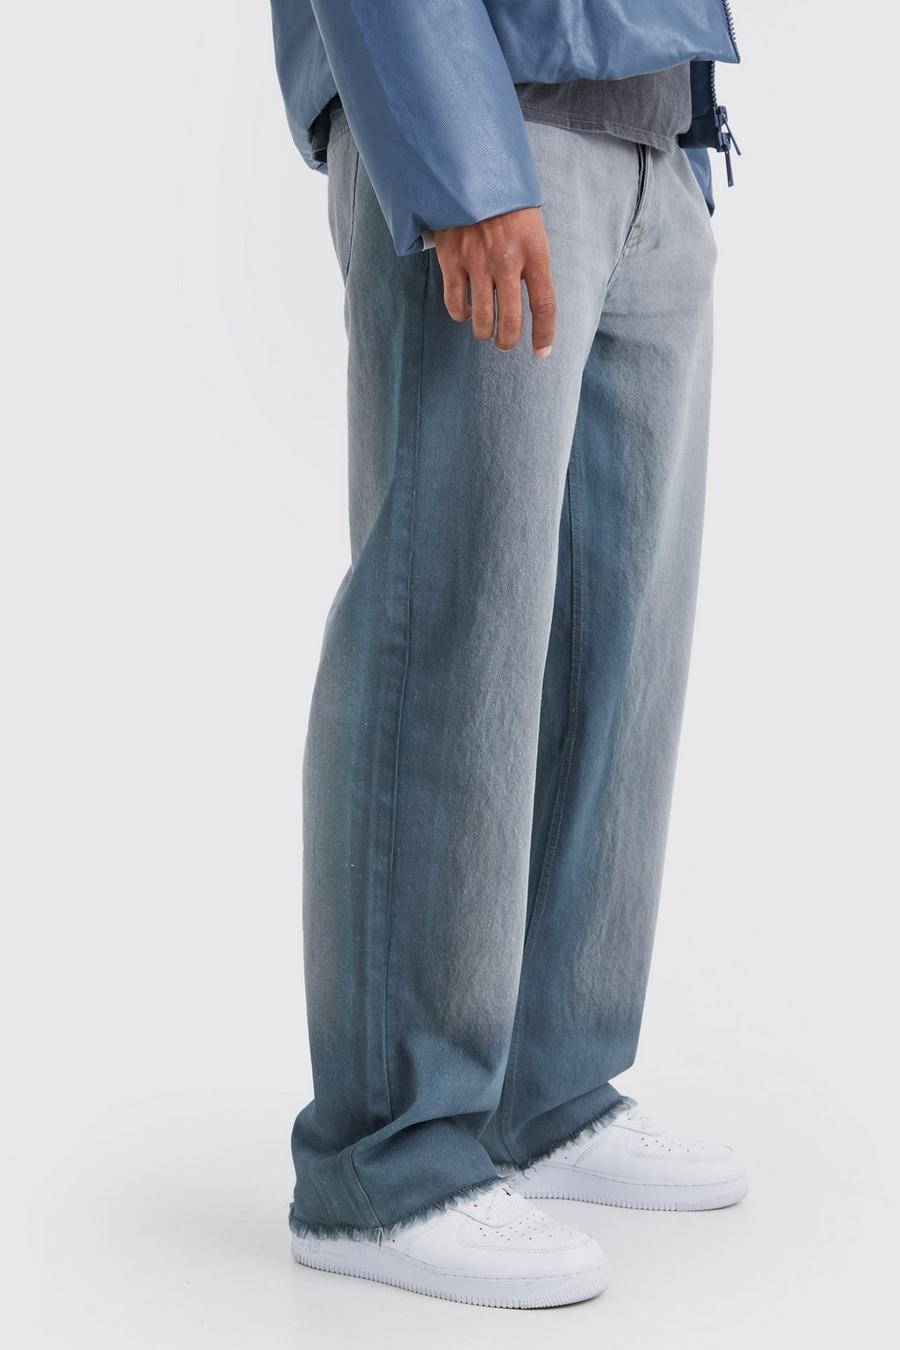 Lockere mittelgraue Jeans mit gebleichtem Saum, Mid grey